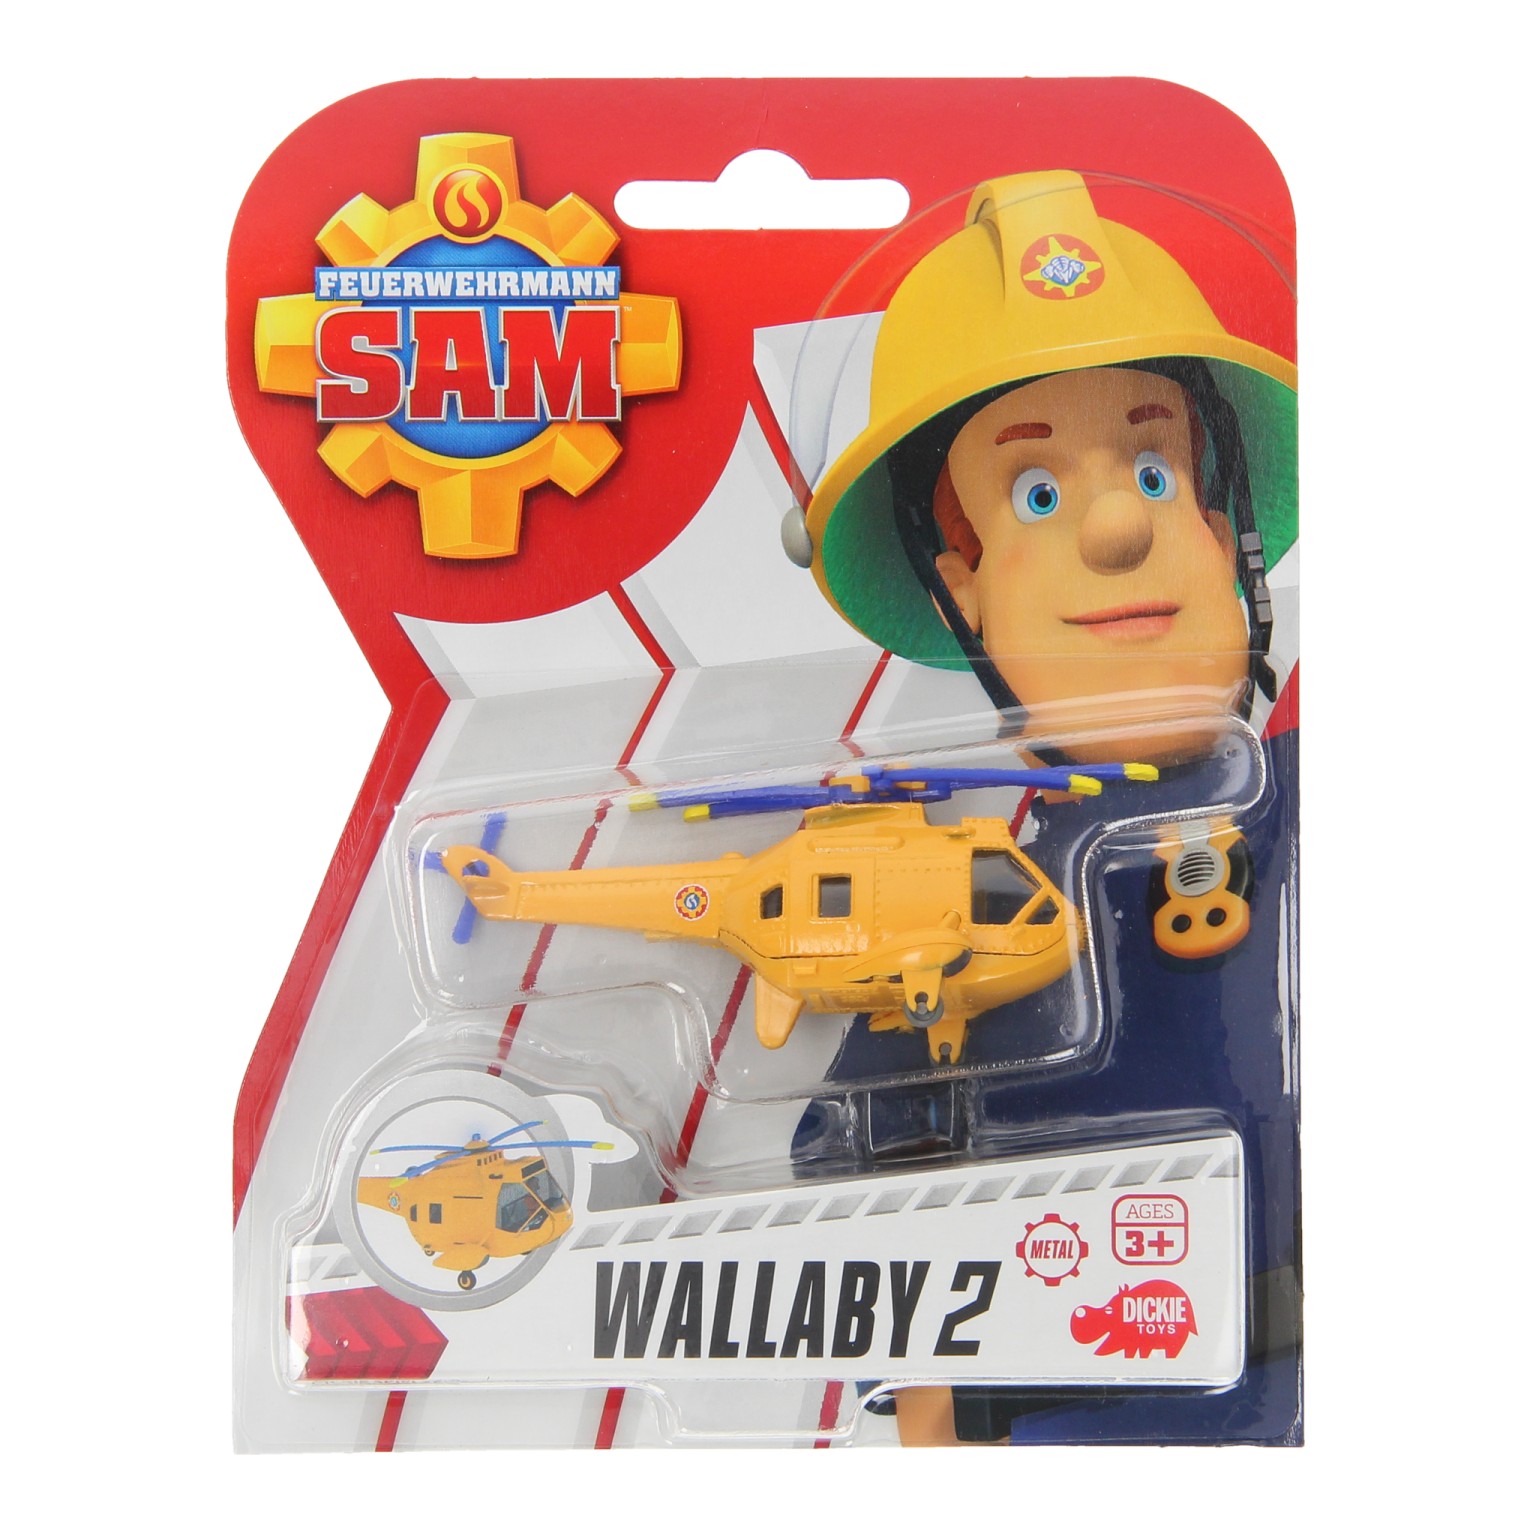 Feuerwehrmann Sam Figur - Wallaby II